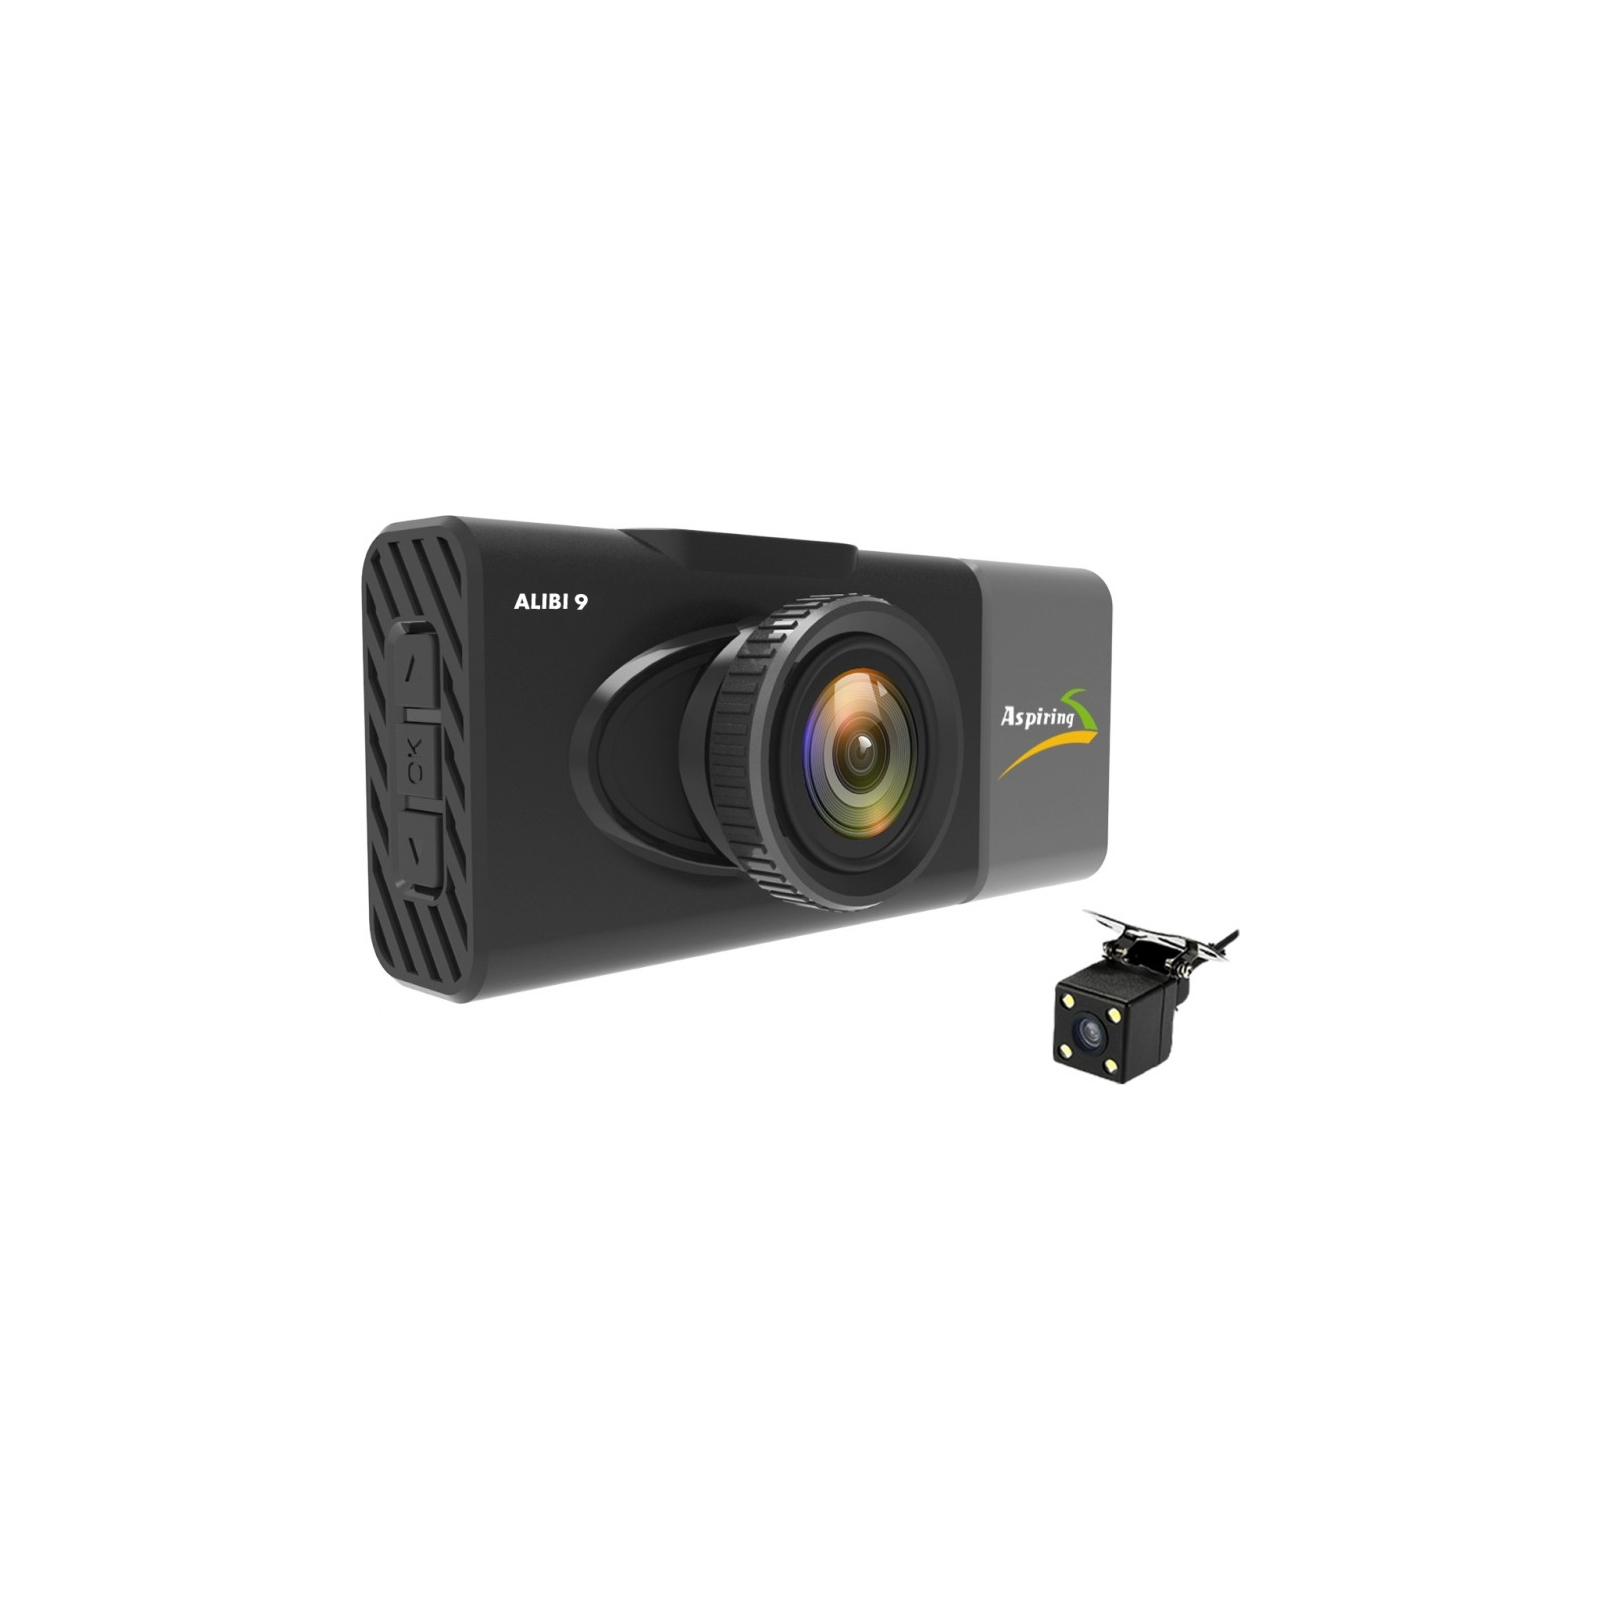 Відеореєстратор Aspiring Alibi 9 GPS, 3 Cameras, Speedcam (Aspiring Alibi 9 GPS, 3 Cameras, Speedcam) зображення 4